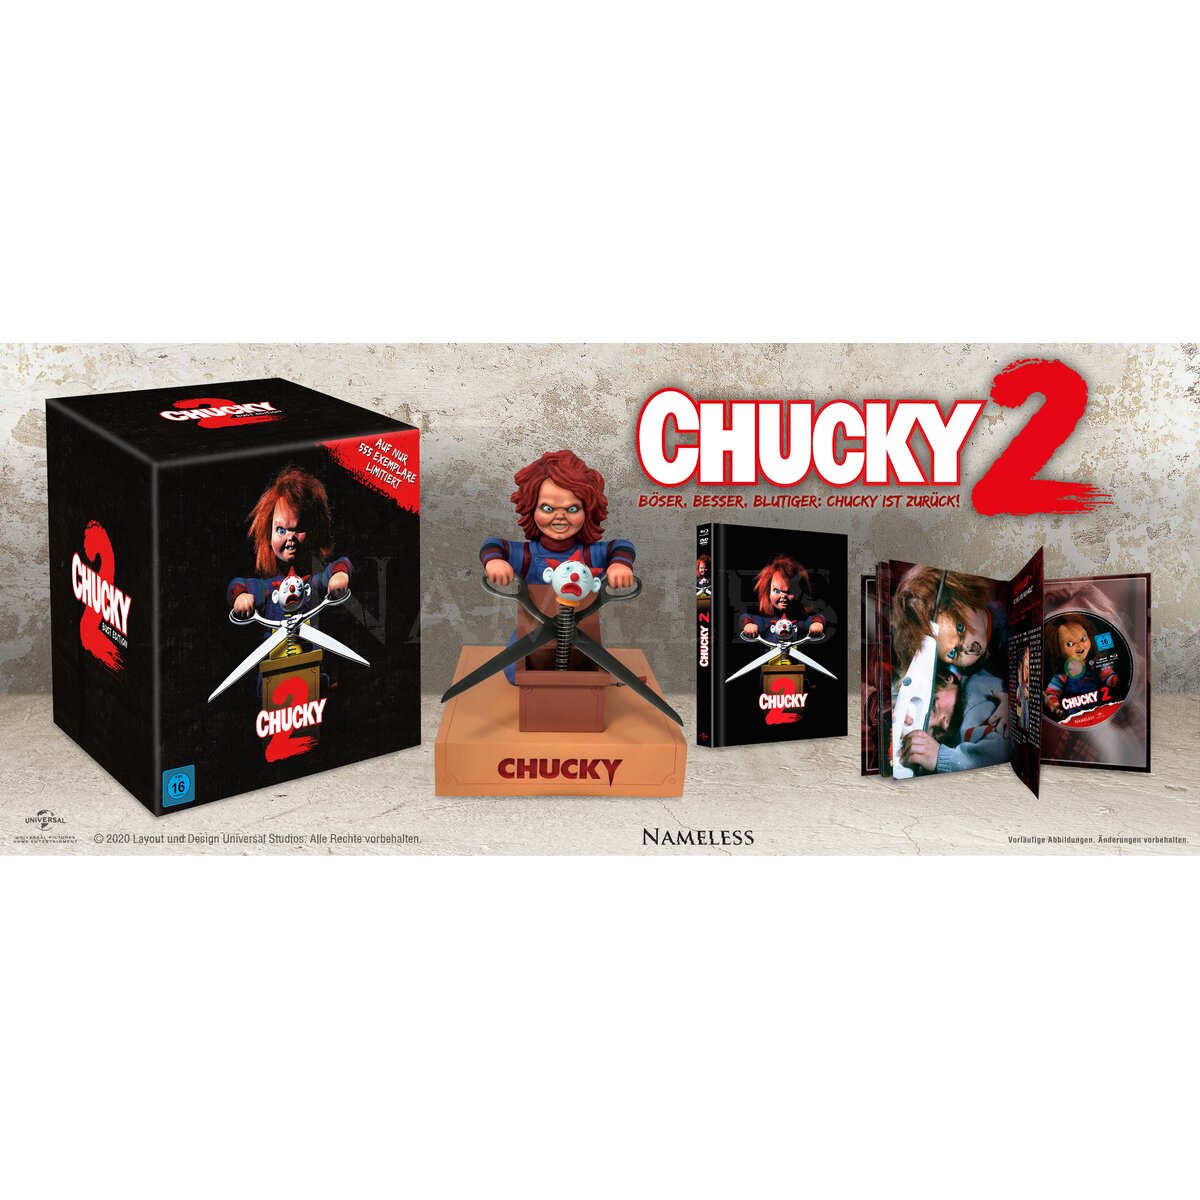 Ihr Uncut Dvd Shop Chucky 2 Die Mörderpuppe Ist Zurück Limited Mediabook Blu Ray Dvd